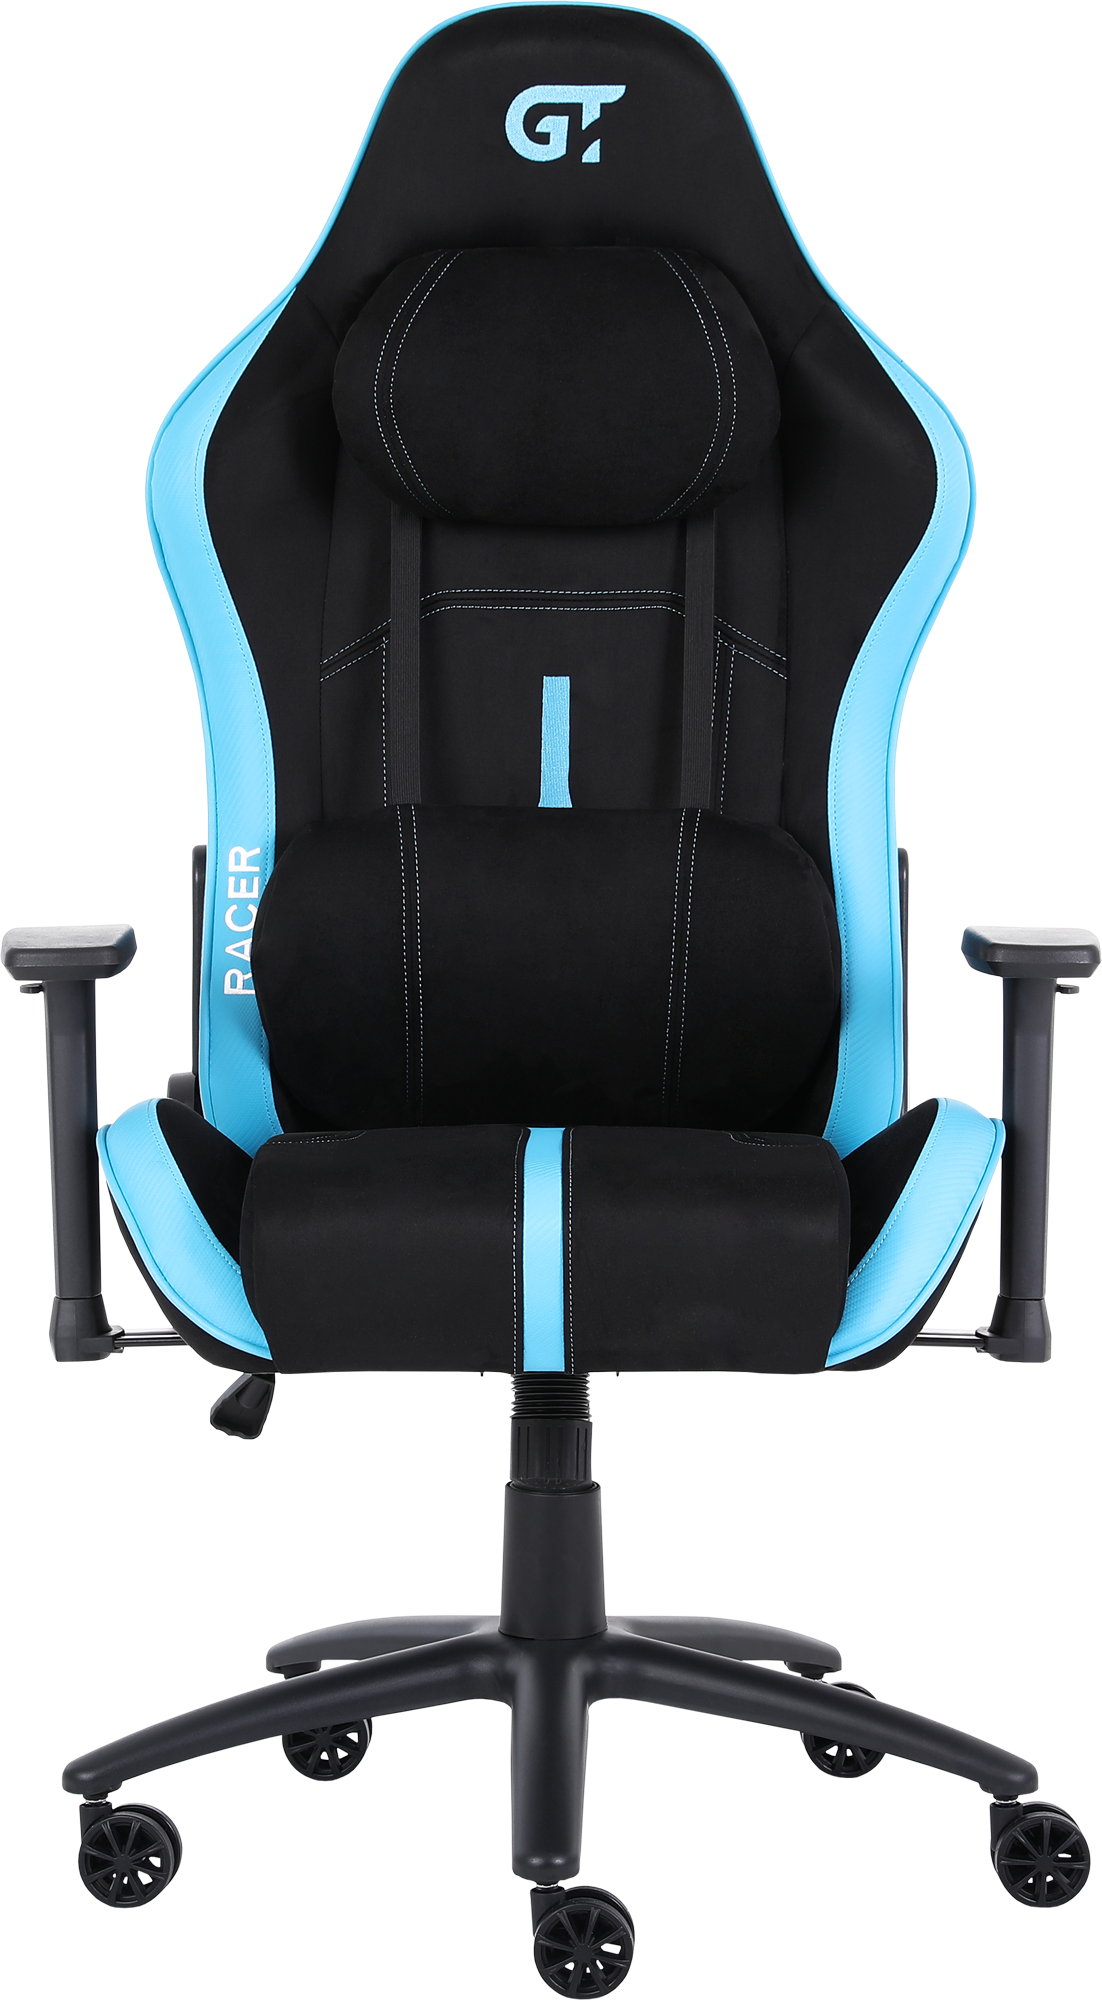 Геймерское кресло GT Racer черное с синим (X-2565 Black/Blue) - фото 2